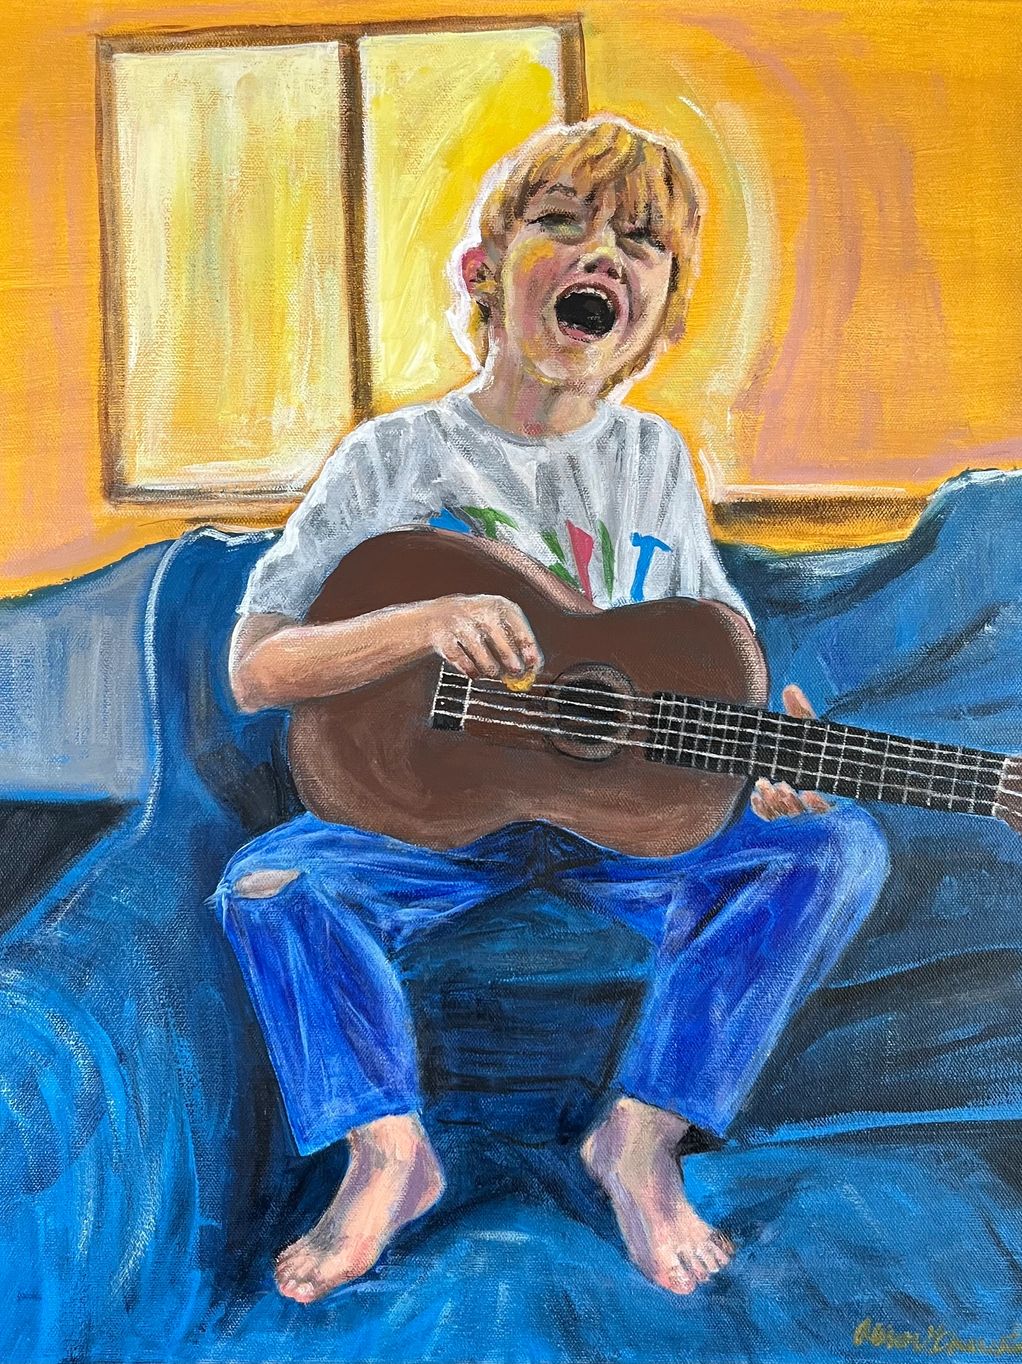 Boy playing a ukelele and singing.